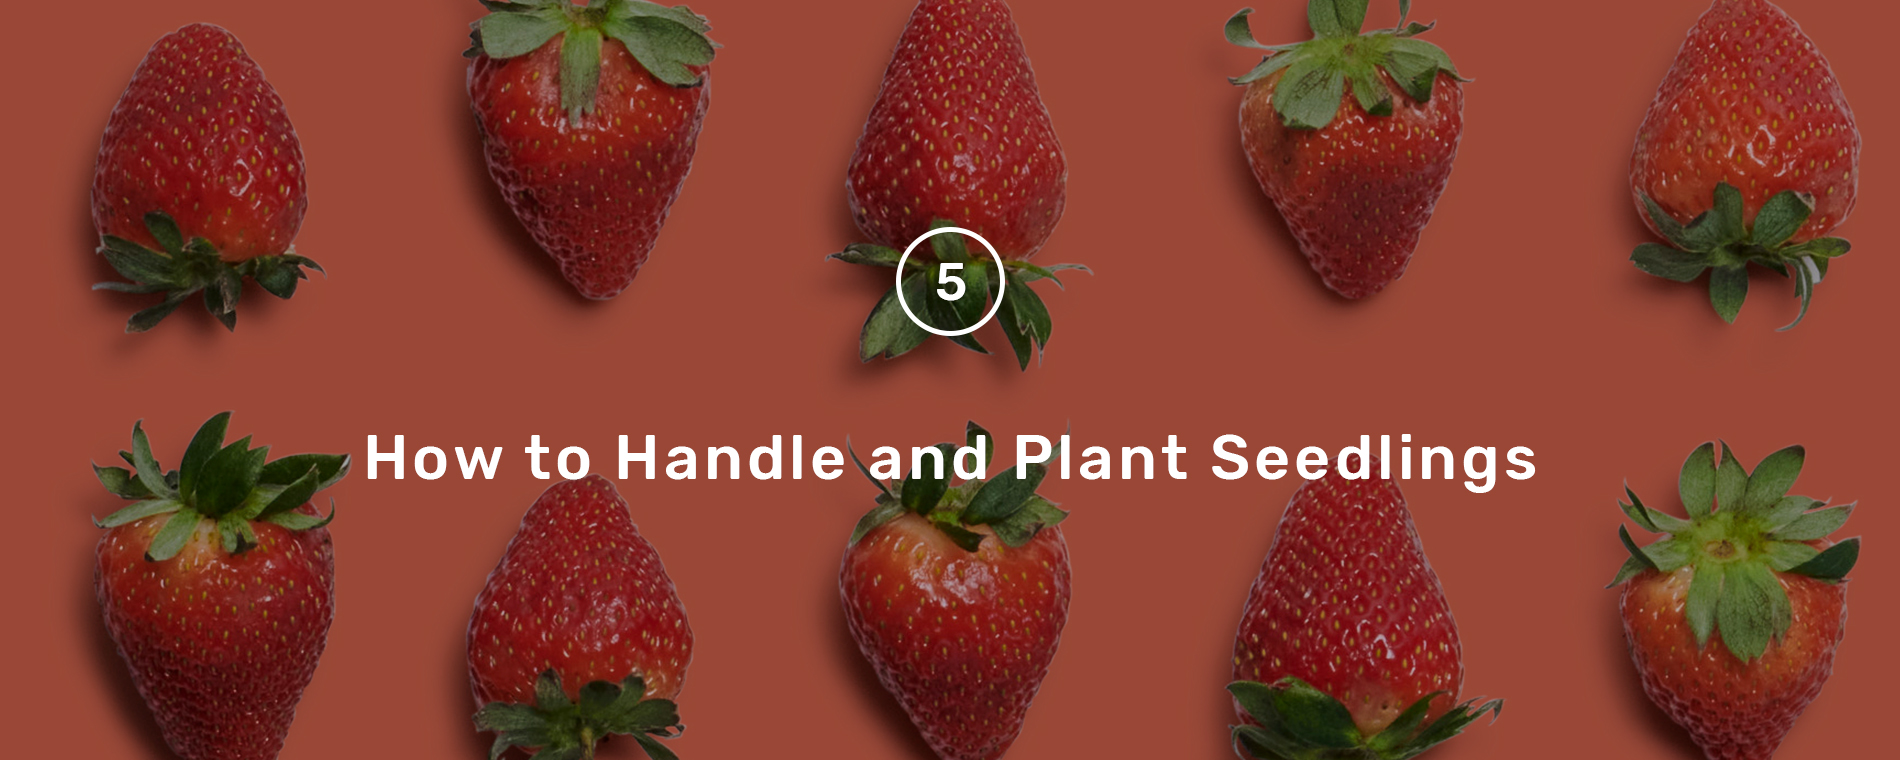 handle_plant_seedlings_hero